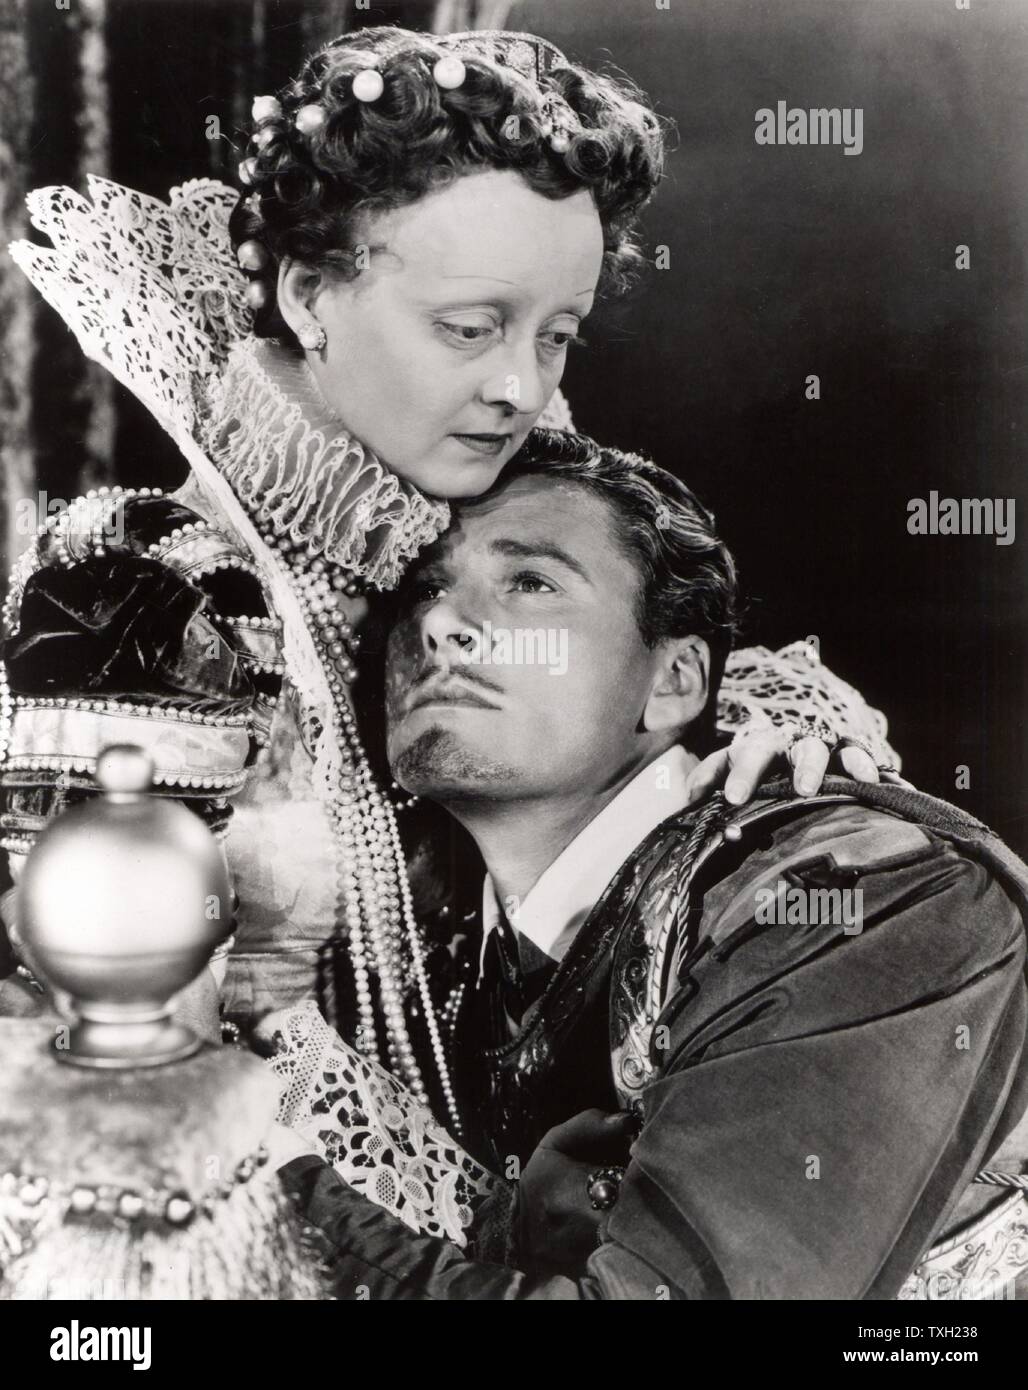 Bette Davis (1908-1989) e Errol Flynn (1909-1959) nel periodo di Hollywood dramma "La vita privata di Elizabeth e Essex', 1939. Diretto da Michael Curtiz. Film Foto Stock